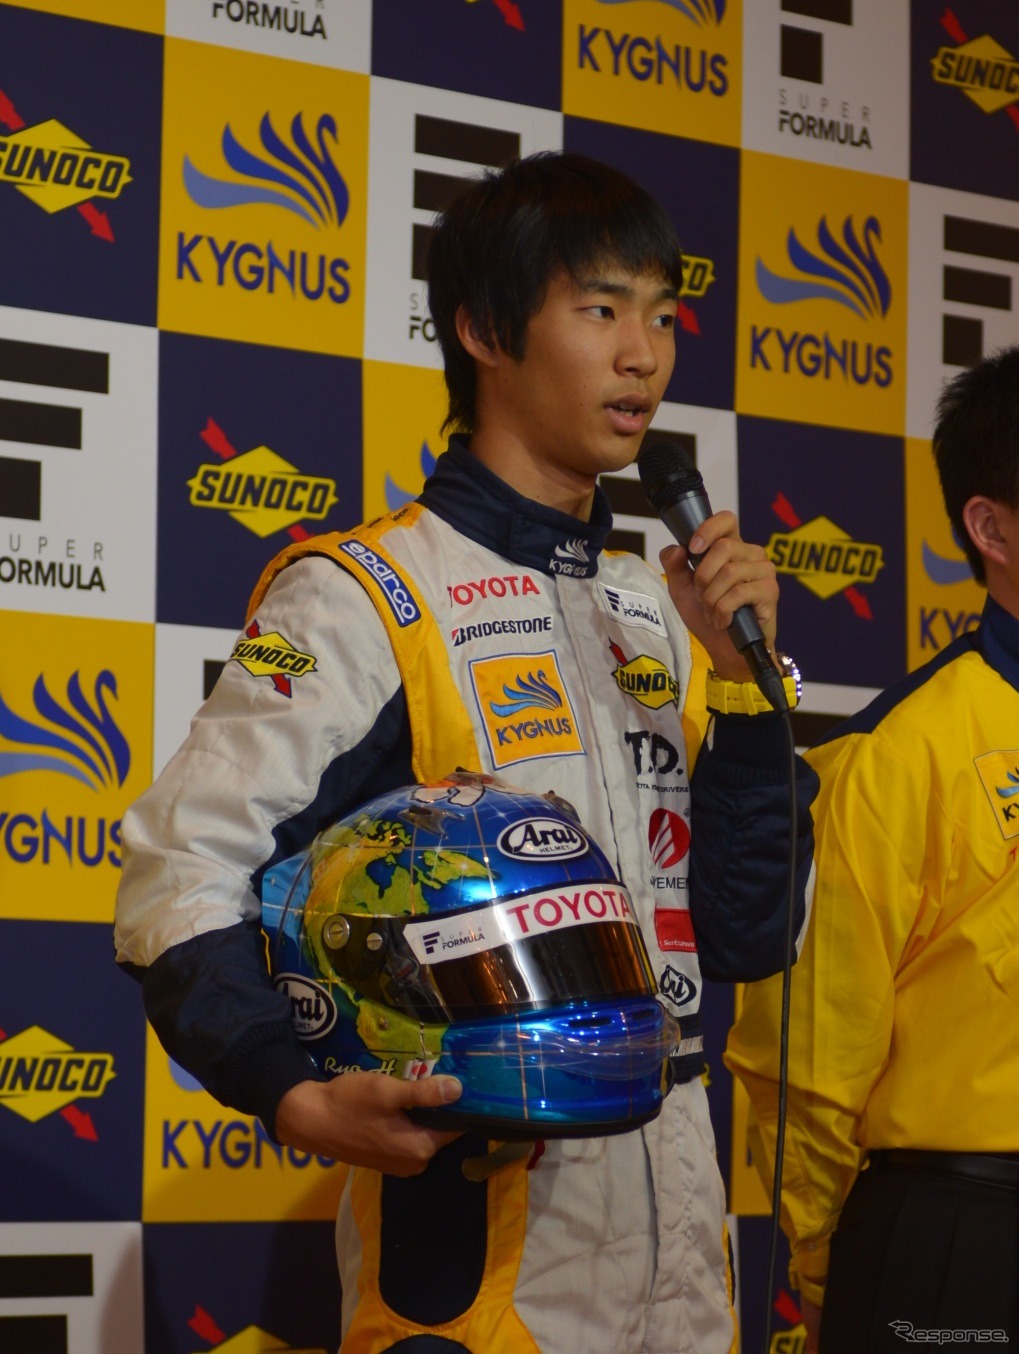 2013年スーパーフォーミュラ参戦、チーム キグナス スノコ 7号車ドライバー 平川・亮選手